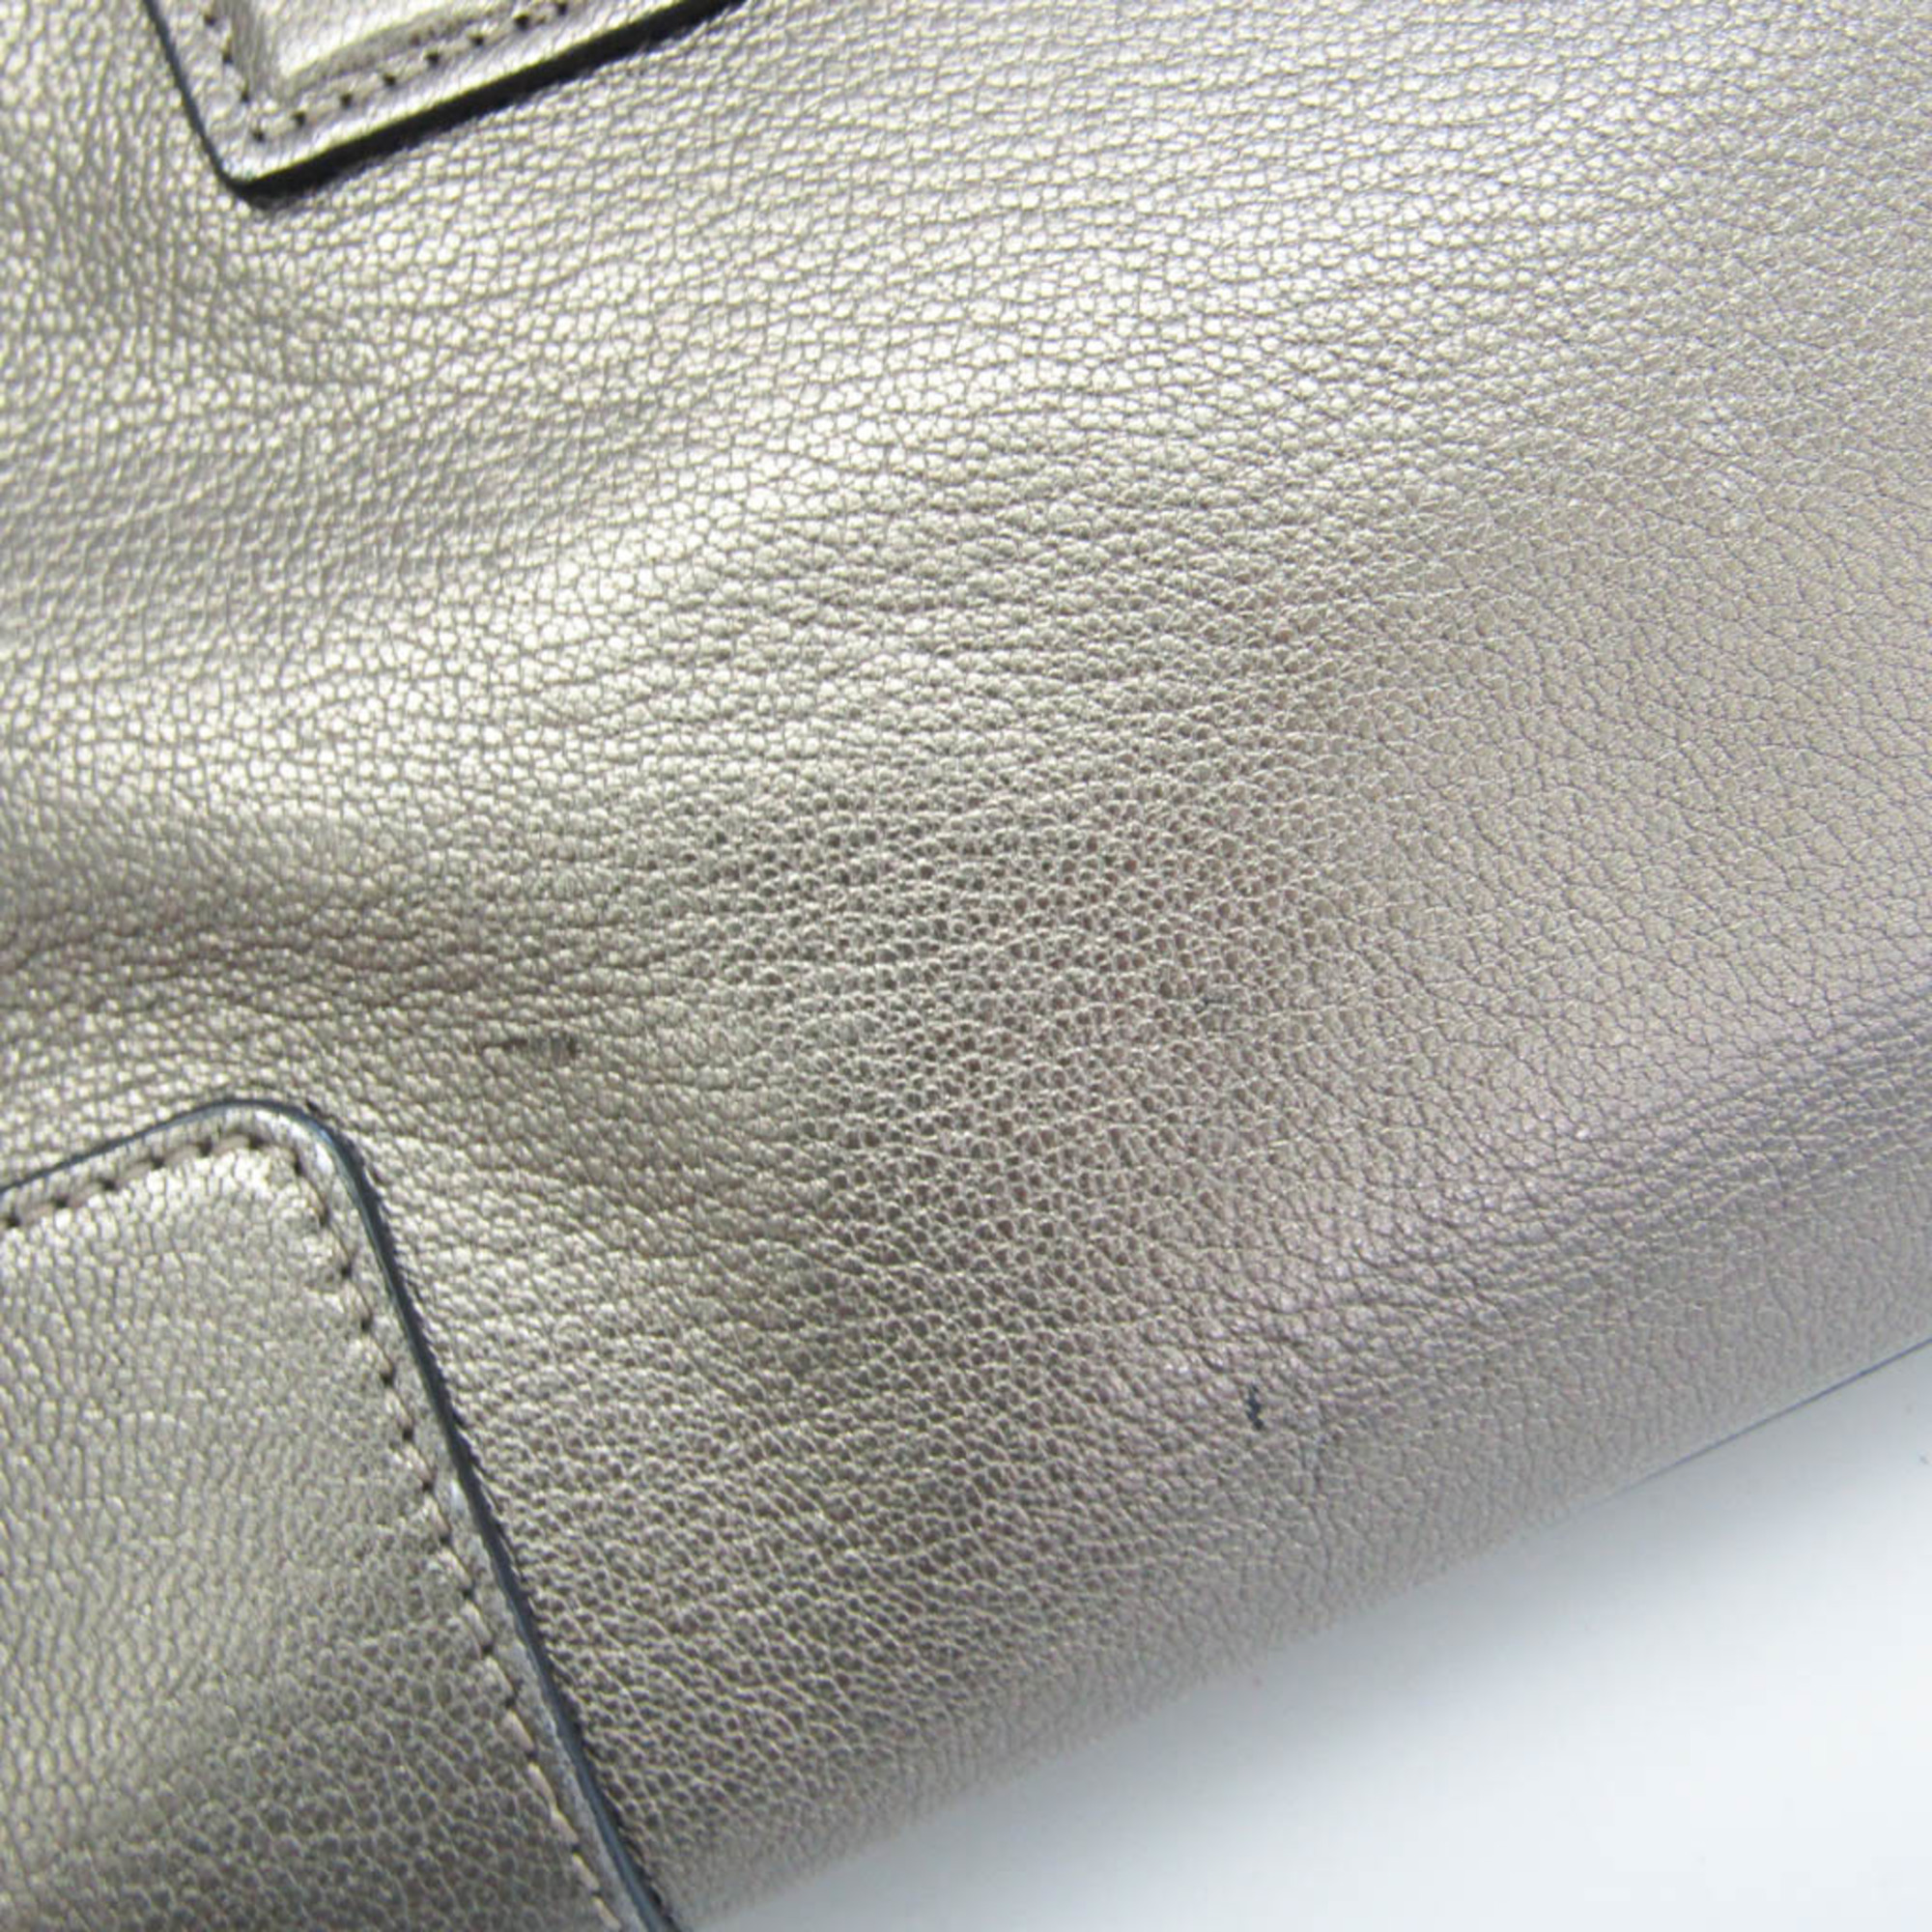 Loewe Amazona 28 Women's Leather Handbag Bronze